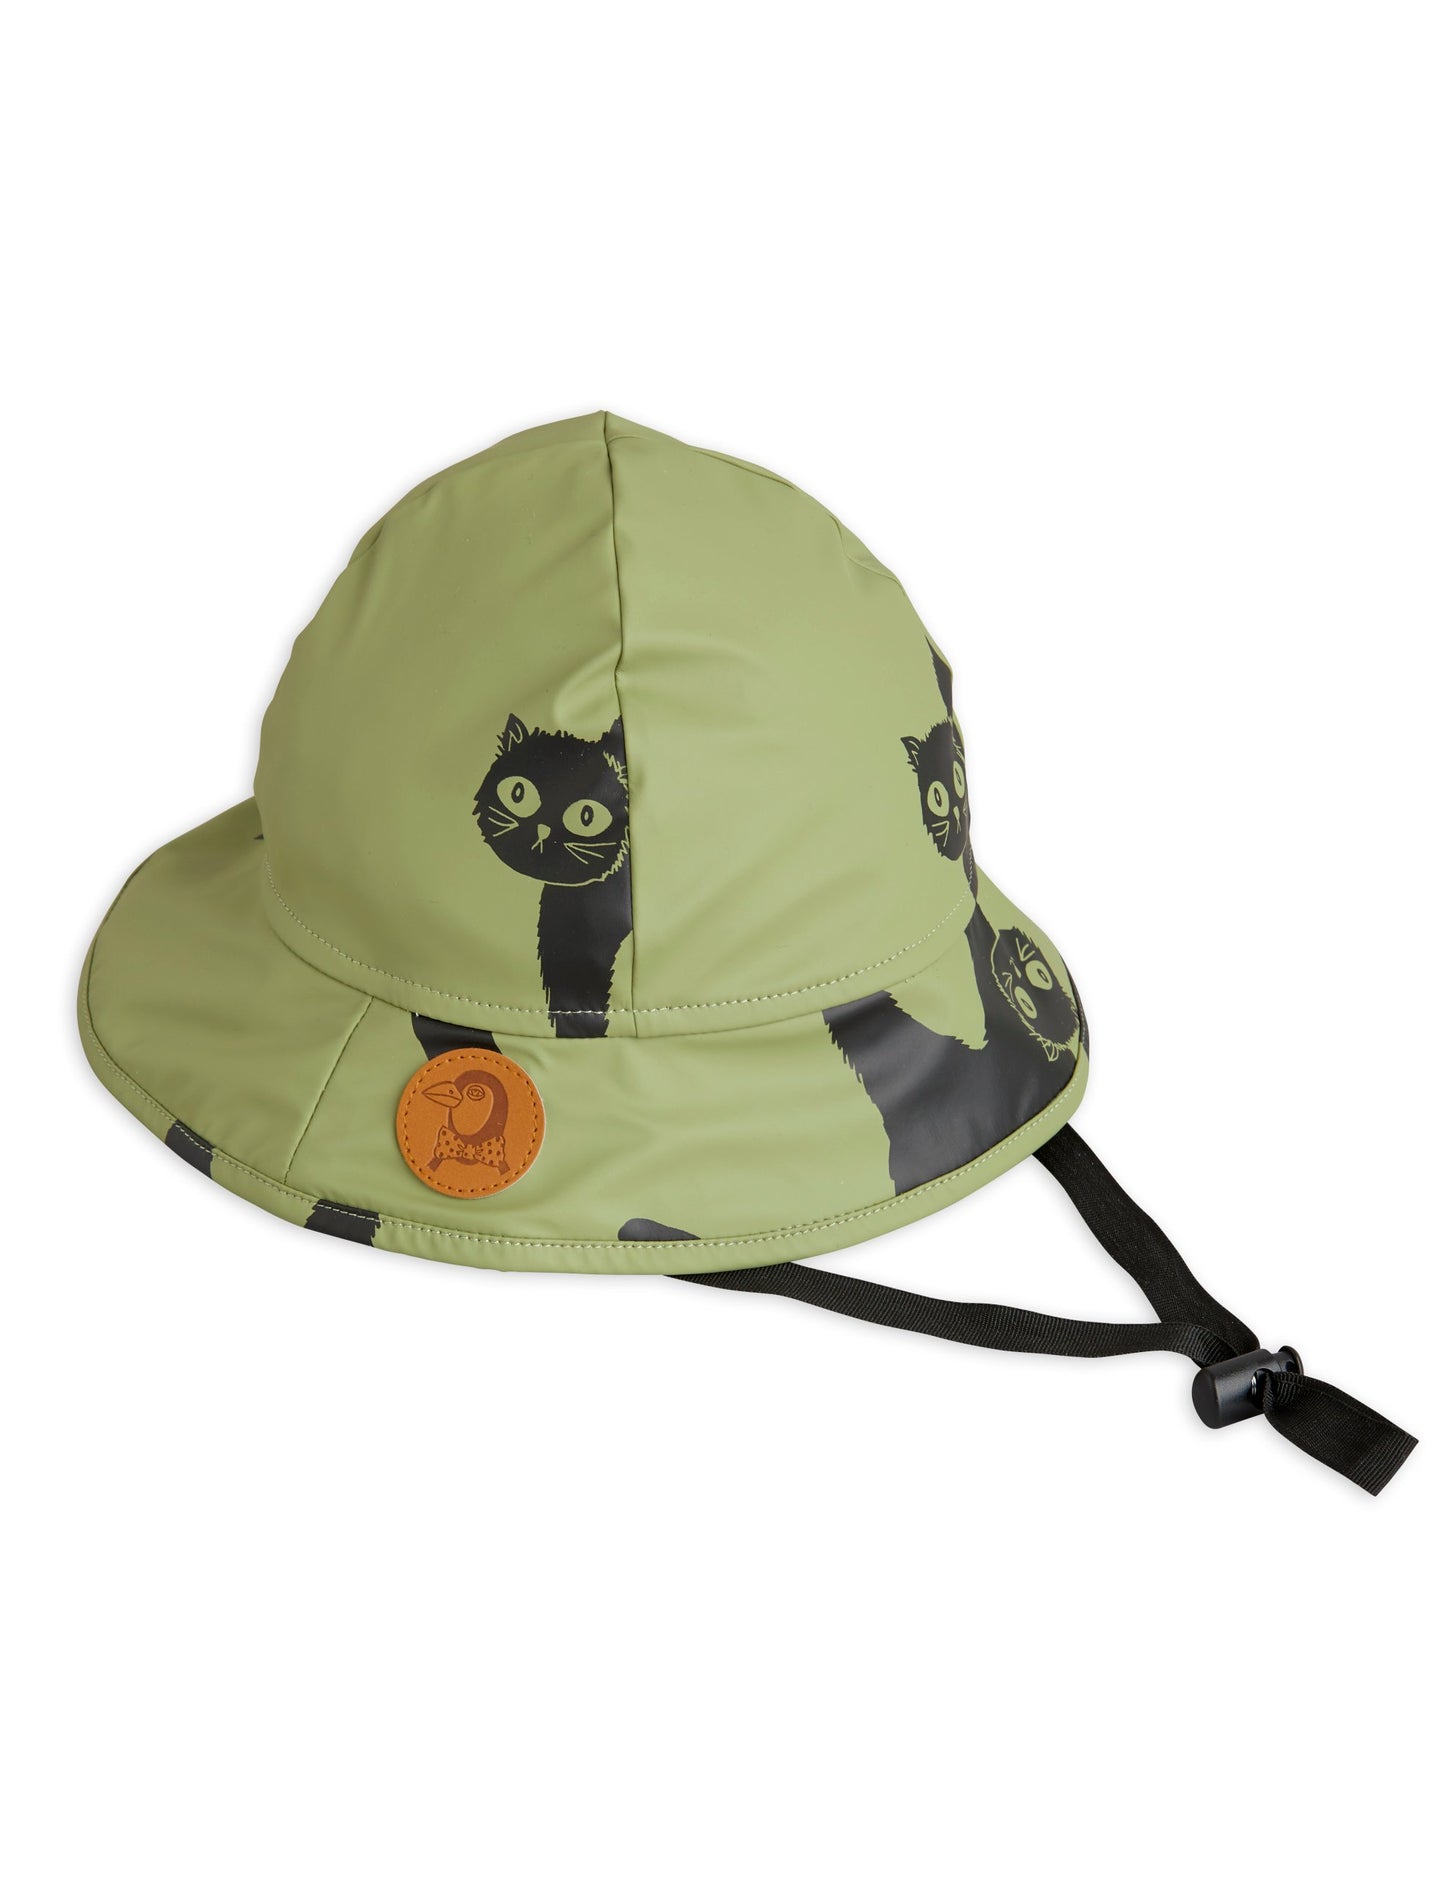 Catz rain hat